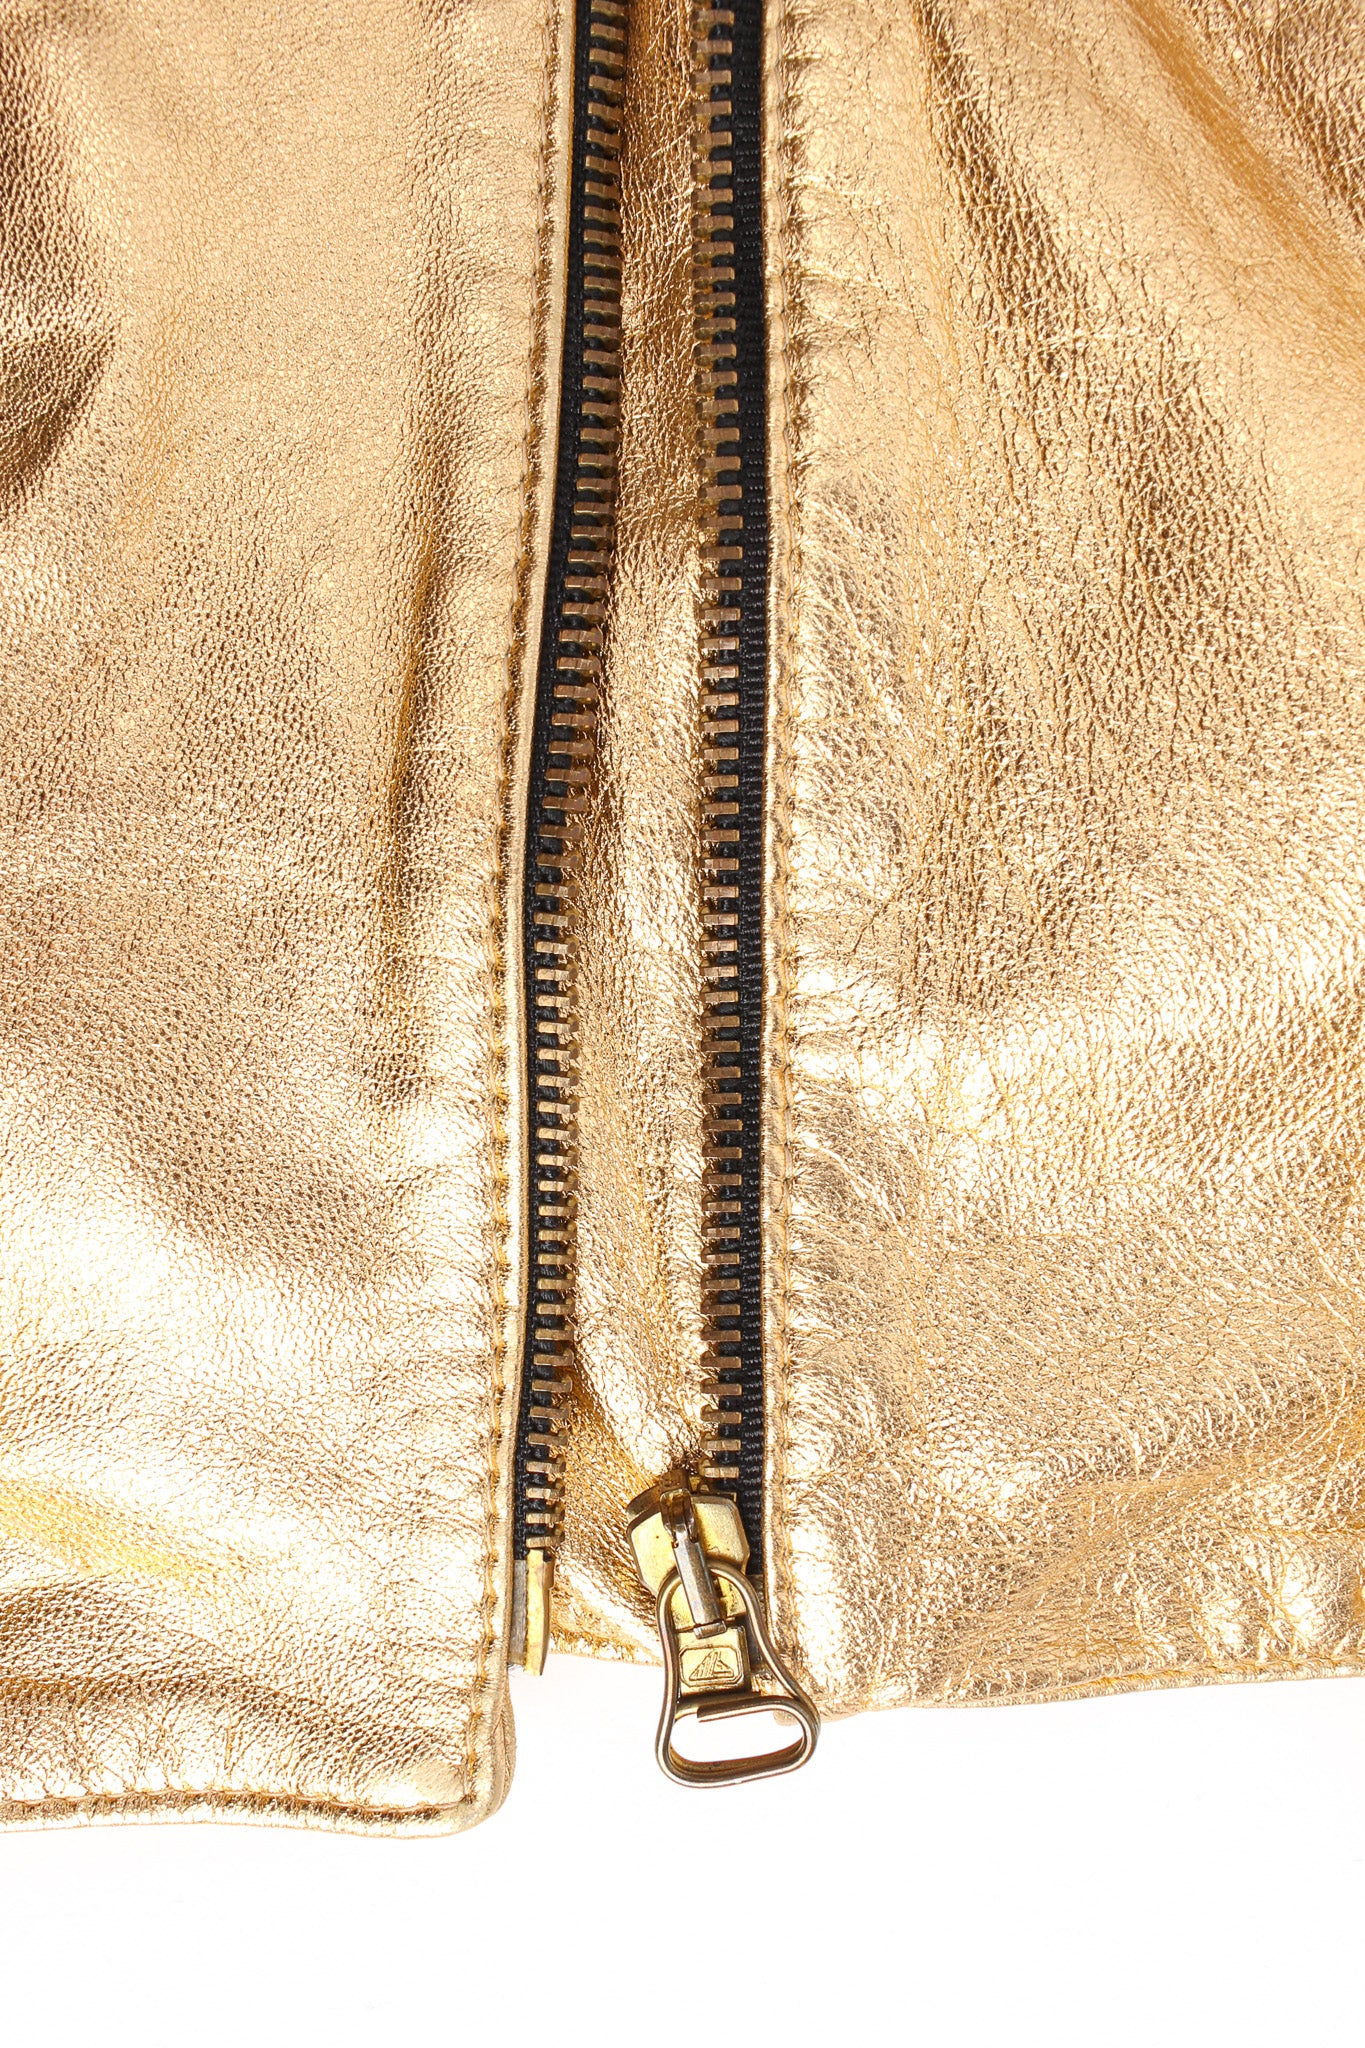 Vintage Begedor Metallic Leather Jacket main zipper @ Recess LA